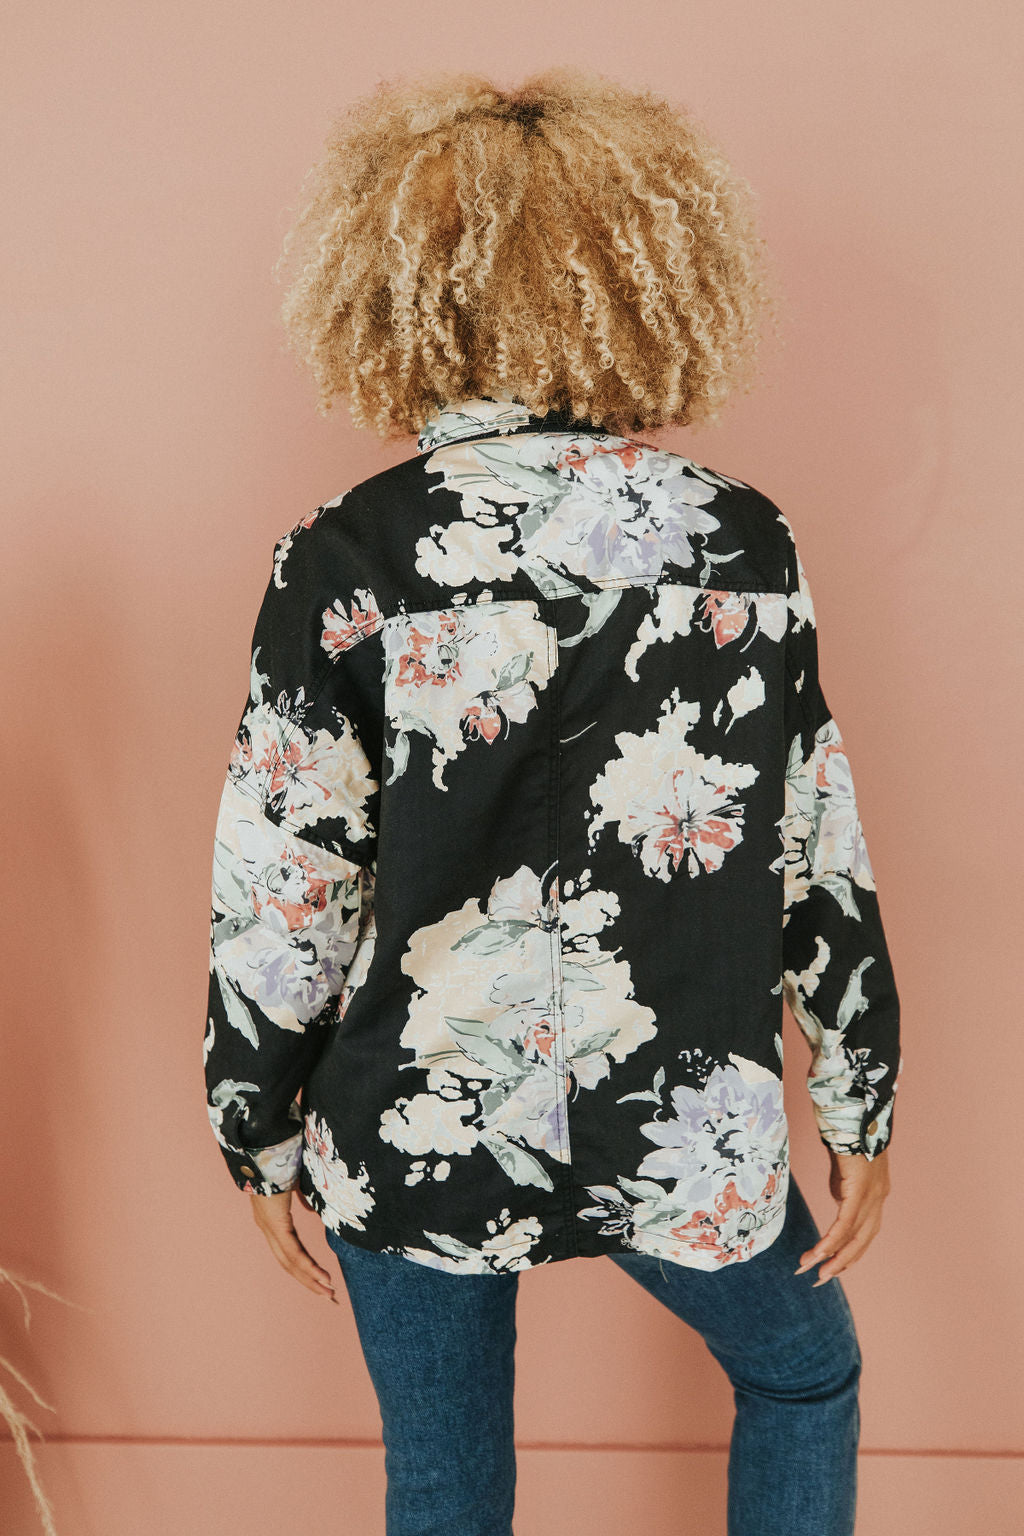 Floral Desires Printed Jacket